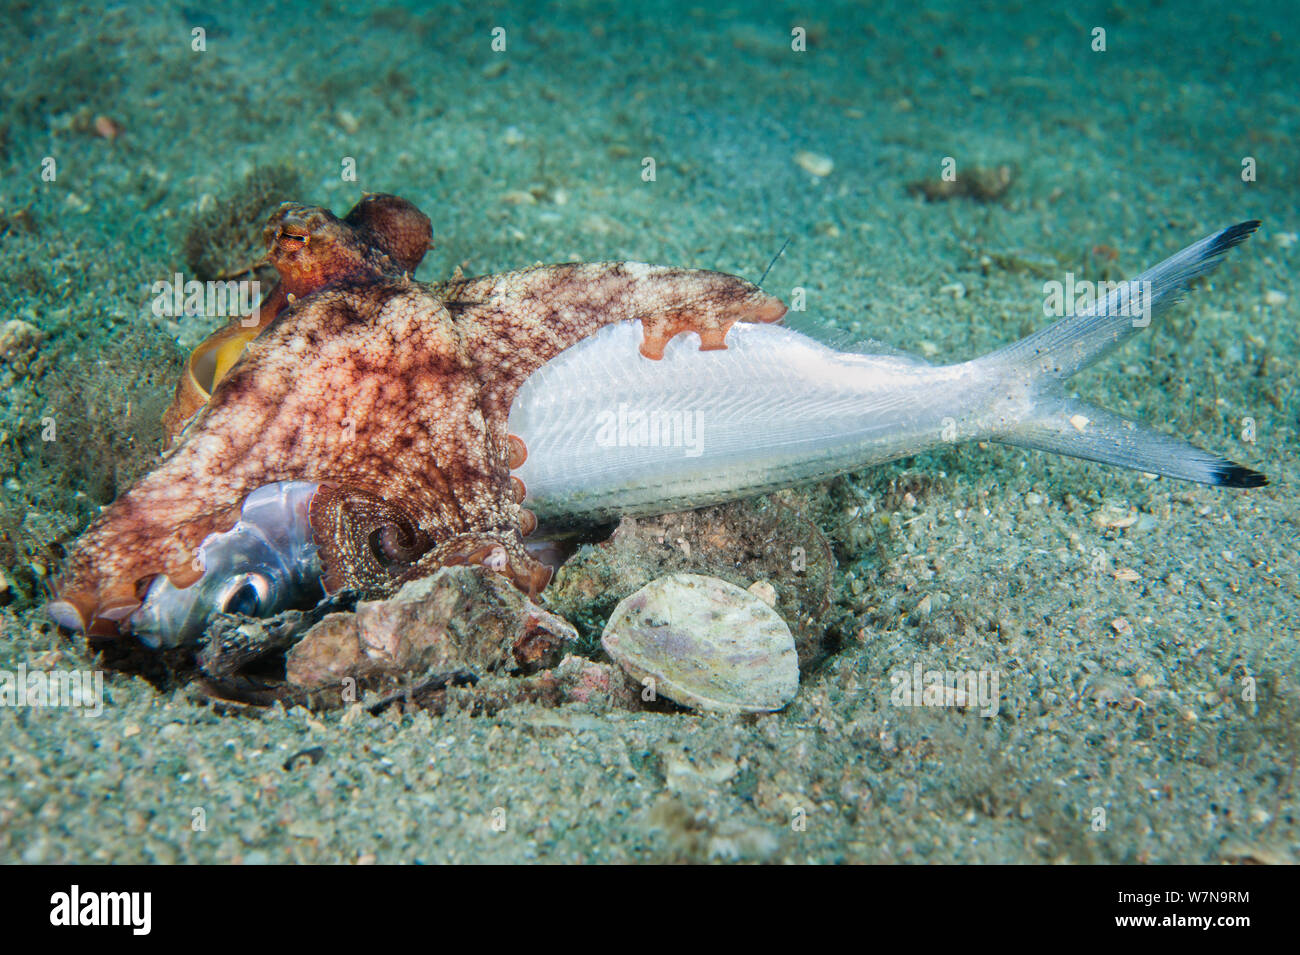 Un polpo (Octopus vulgaris) estrae un pesce morto, trascinandola nella sua tana. West Palm Beach, Florida, Stati Uniti d'America Foto Stock